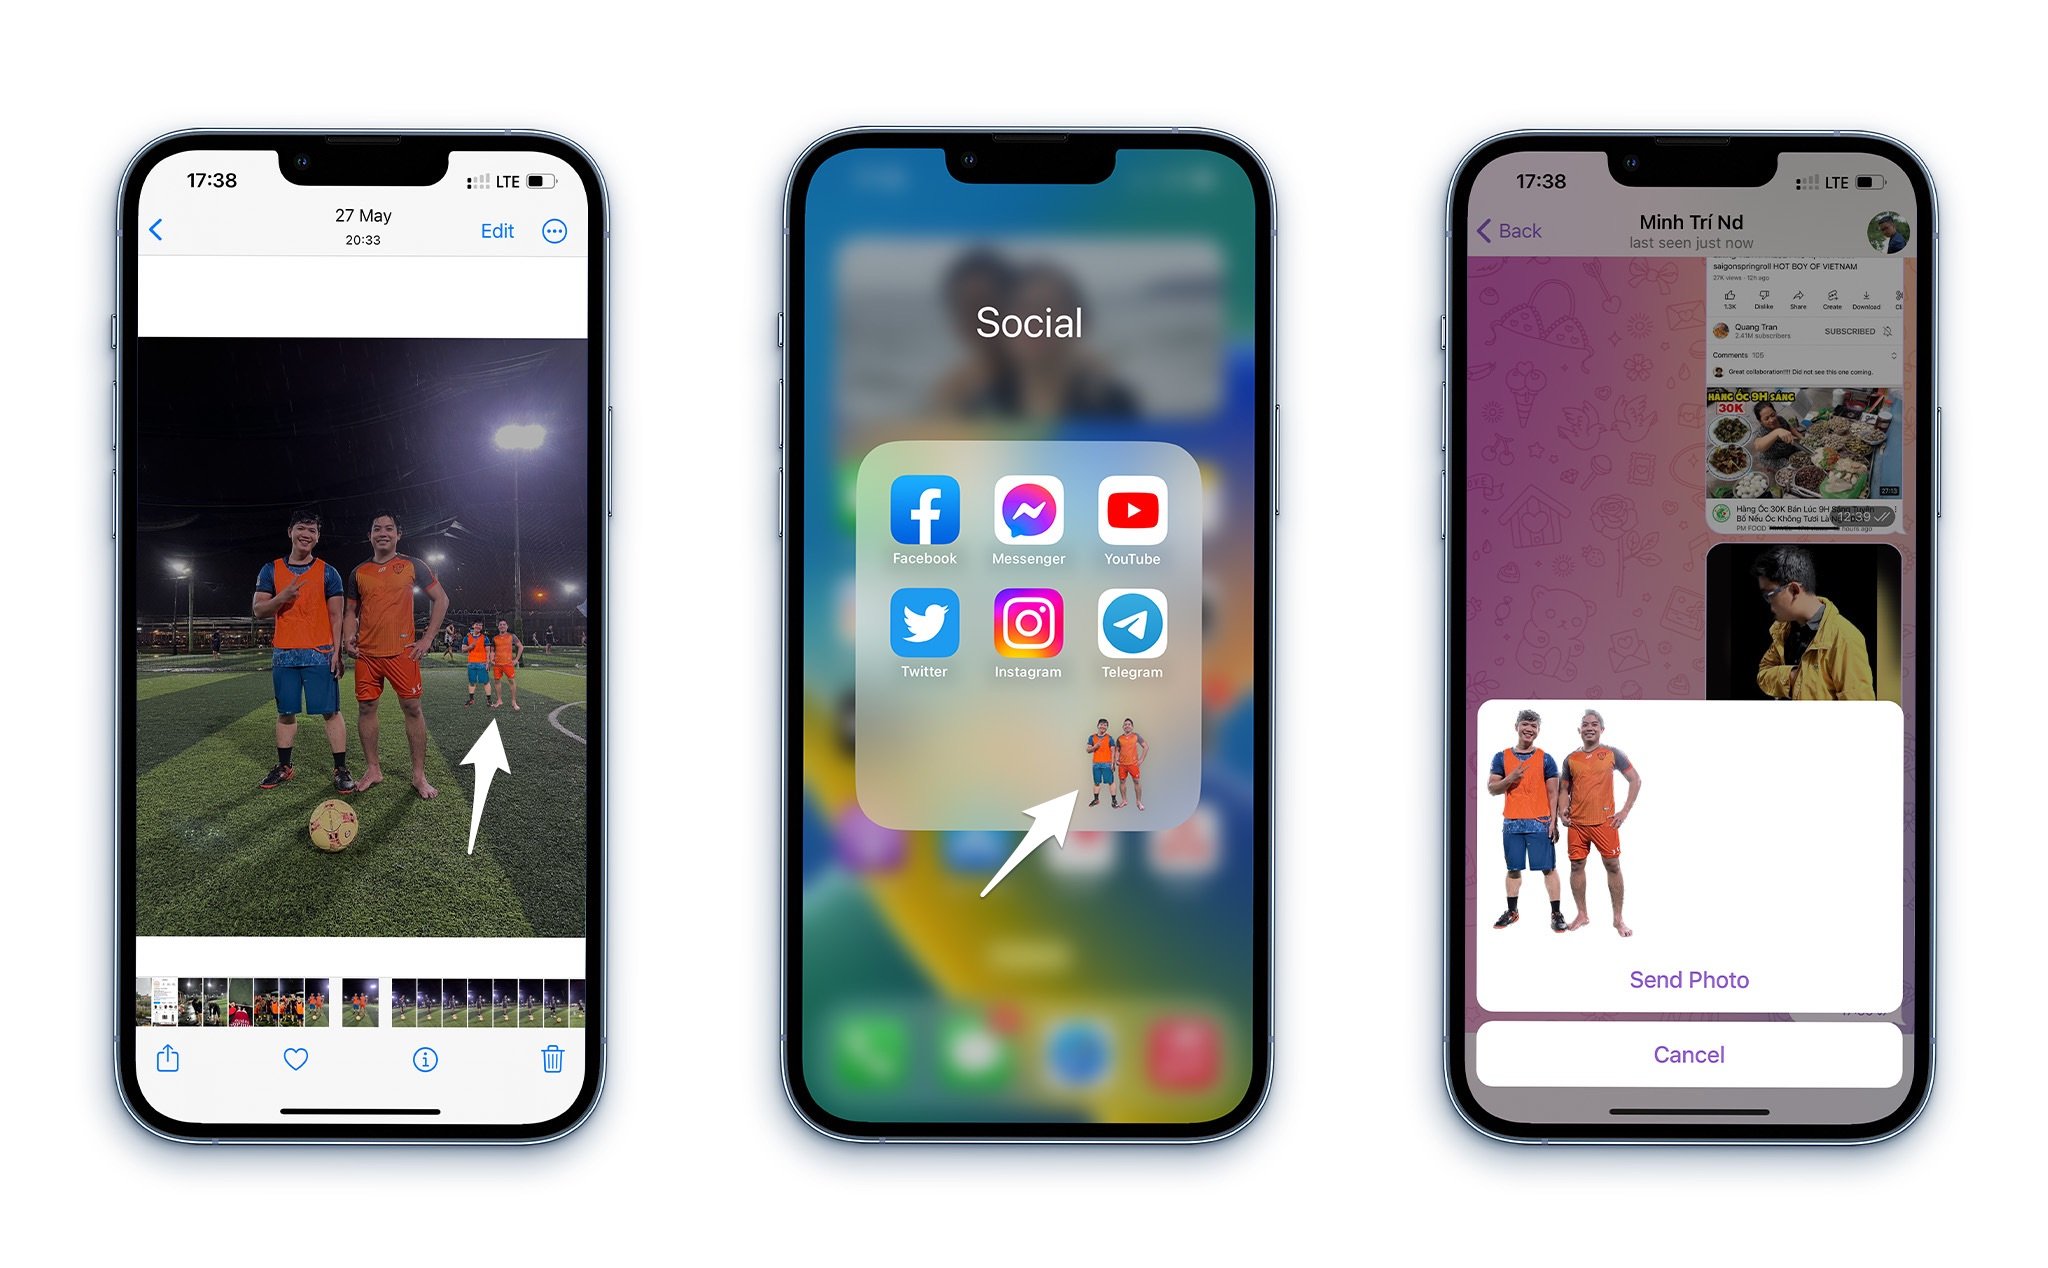 iOS 16 mang đến cho người dùng chức năng tách chủ thể tuyệt vời. Không chỉ dừng lại ở việc tách nền ảnh, iOS 16 còn cho phép bạn tách riêng đối tượng trên bức ảnh, giúp tạo điểm nhấn và lấy nét đến từng chi tiết, thể hiện trọn vẹn tình cảm và cảm xúc trong từng khoảnh khắc.